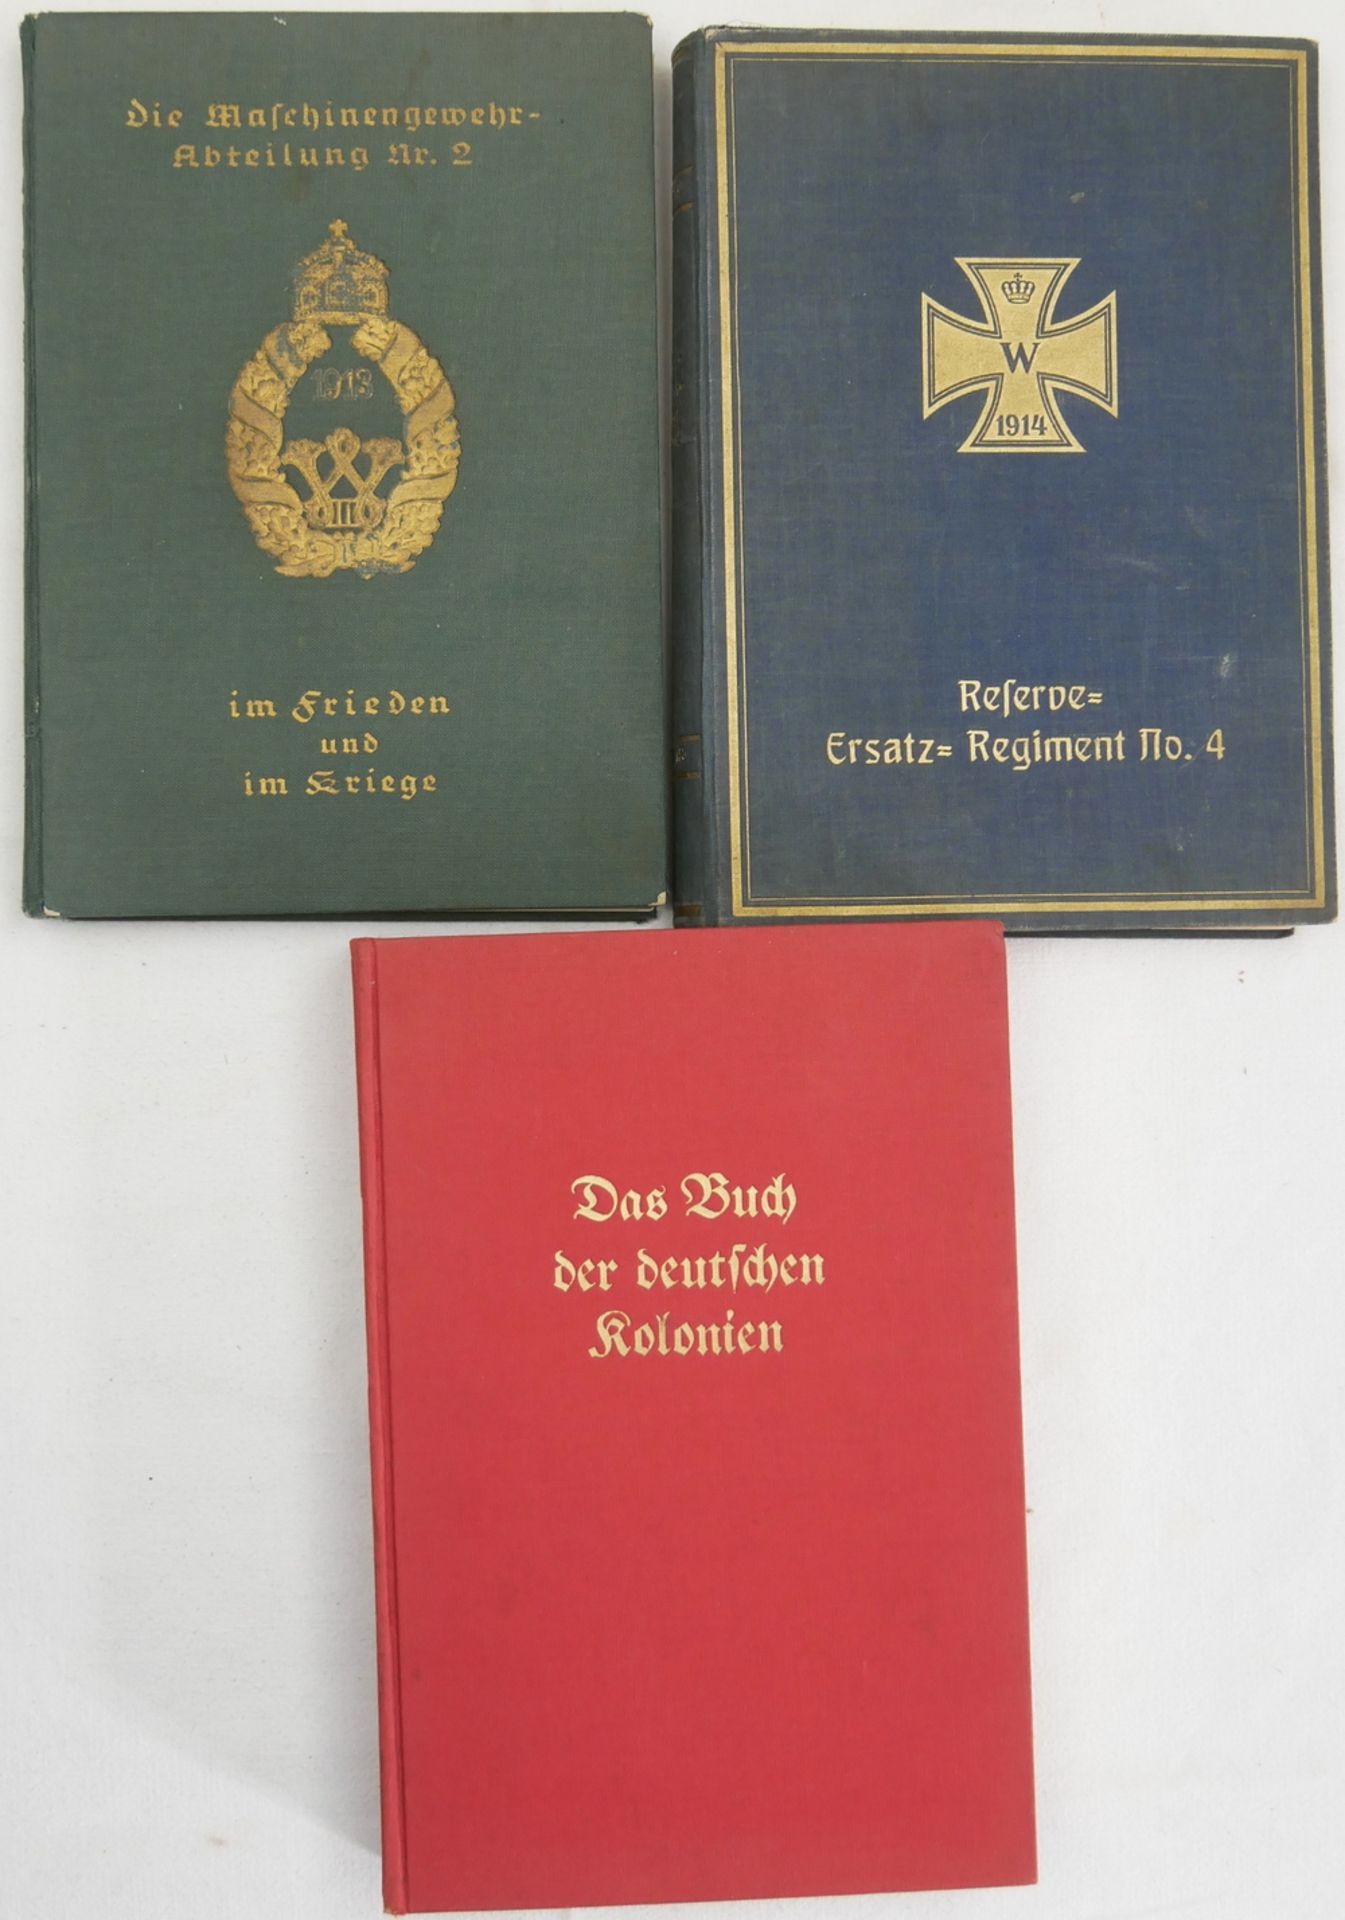 Lot Bücher, insgesamt 3 Stück. Dabei Das Buch der deutschen Kolonien, Reserve - Ersatz - Regiment